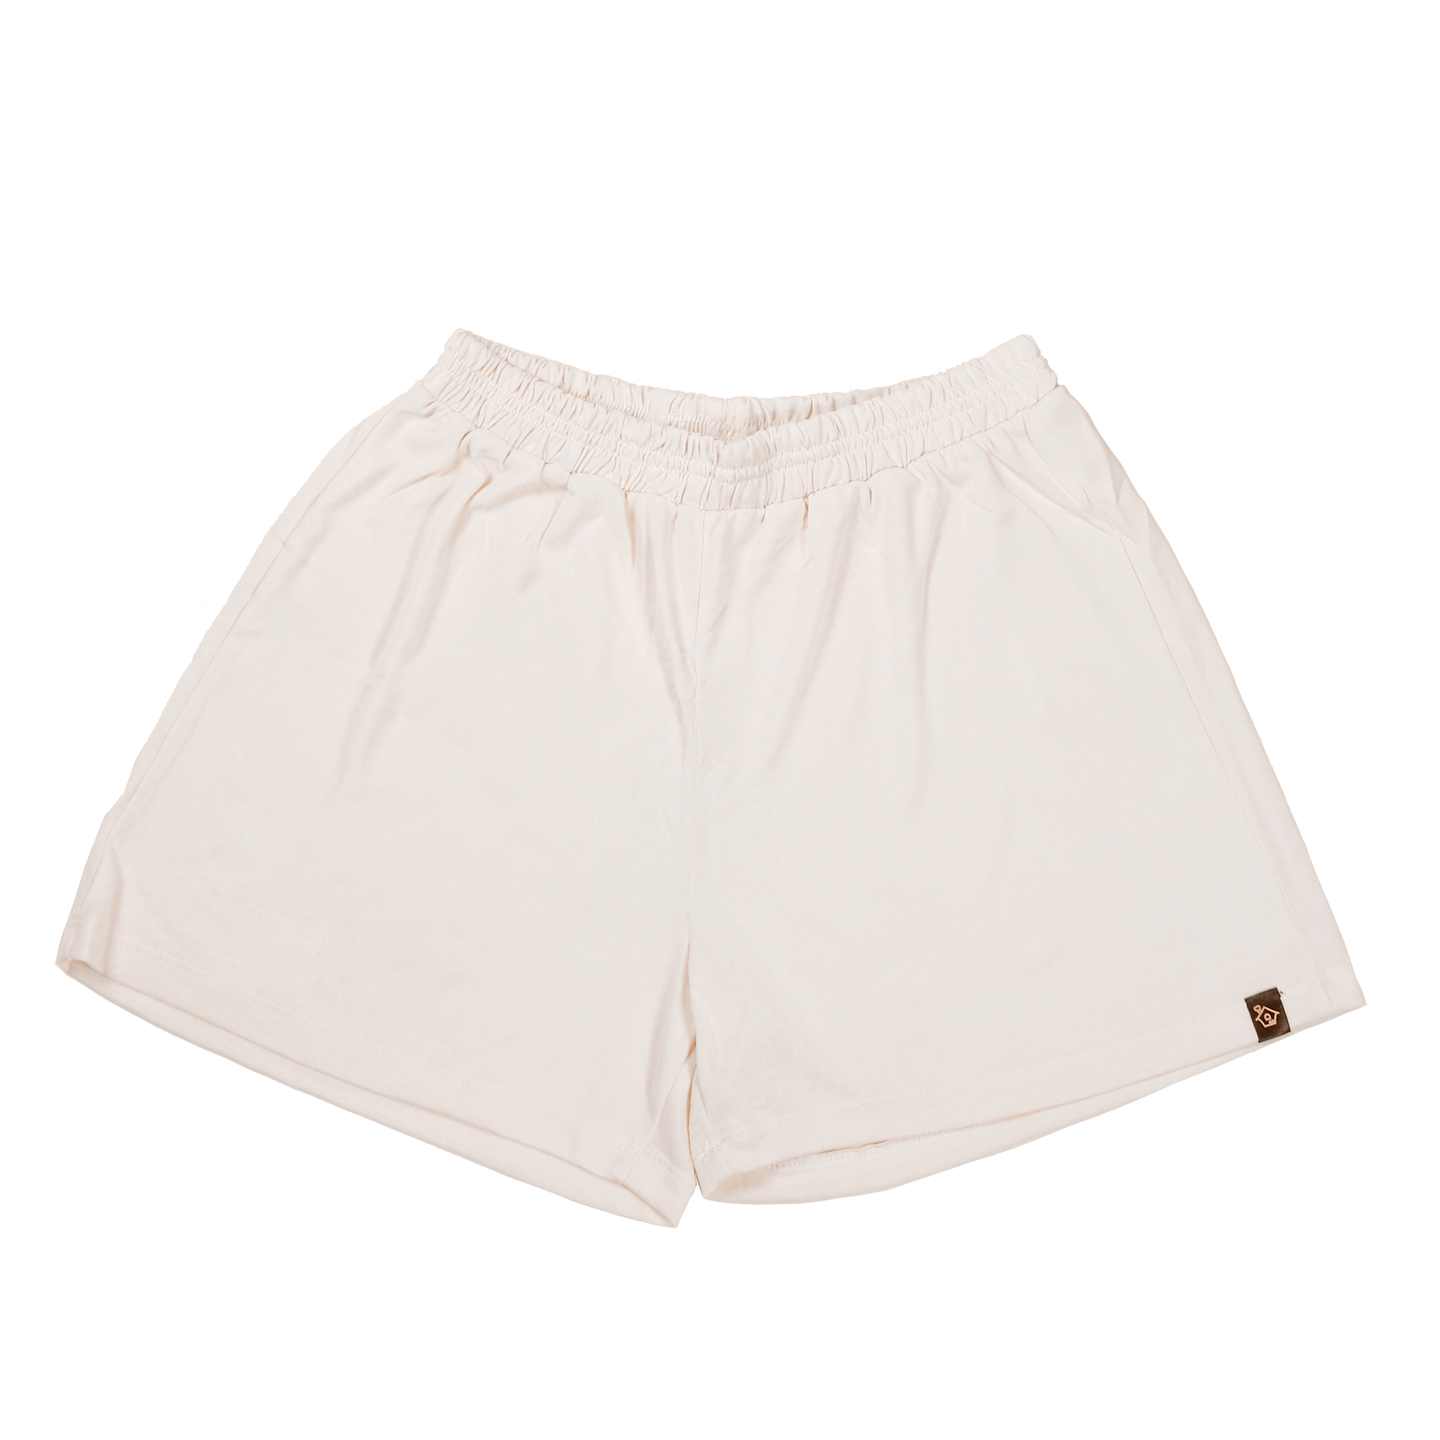 [Shorts Only] Tencel Modal Zipkok® Homewear Loungewear Comfortwear Easywear for Summer